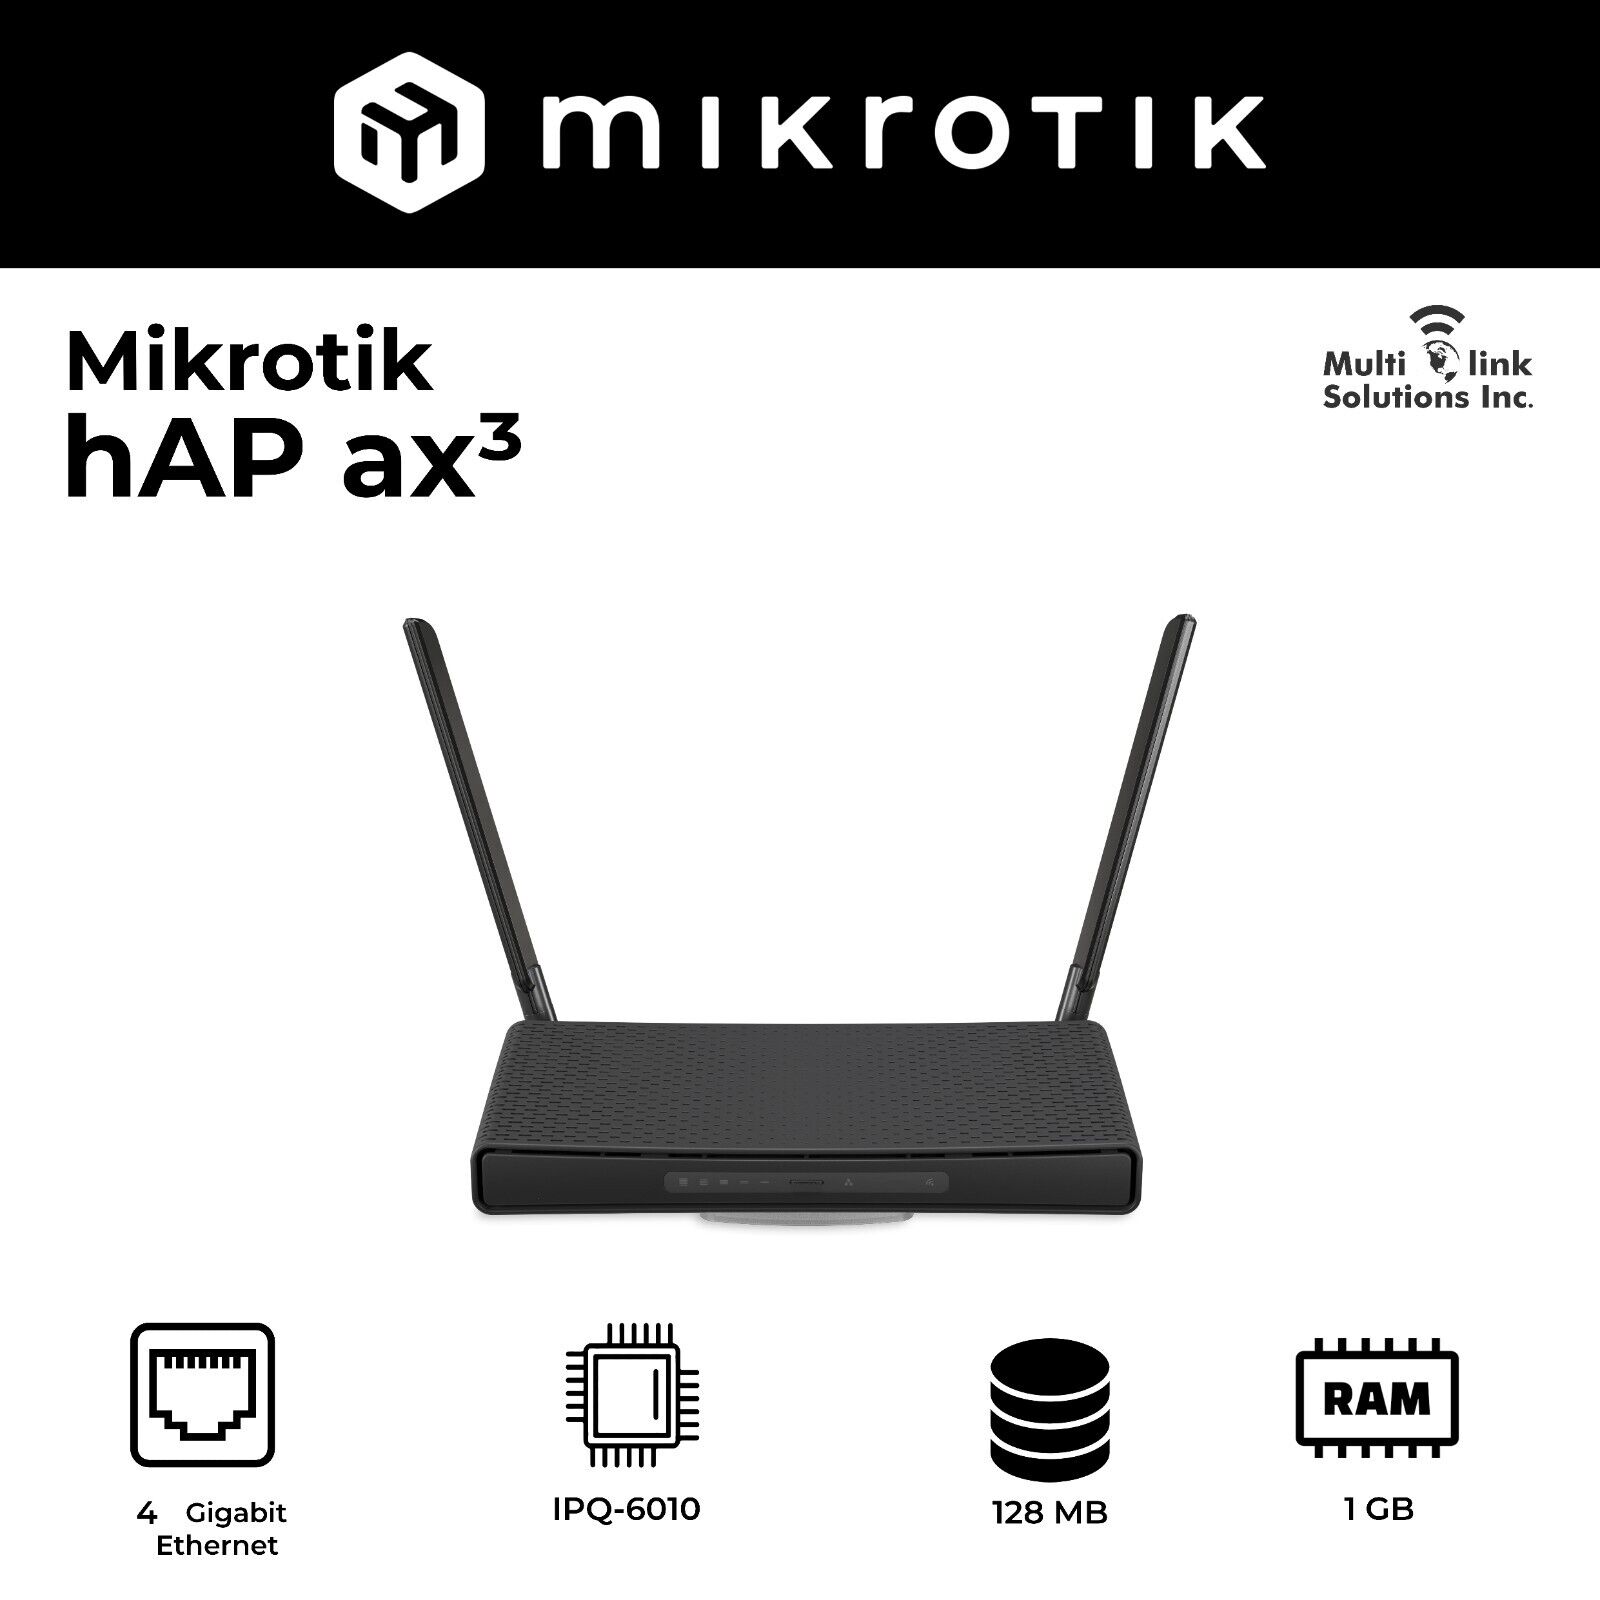 Used MikroTik hAP ax3 US version C53UiG+5HPaxD2HPaxD-US